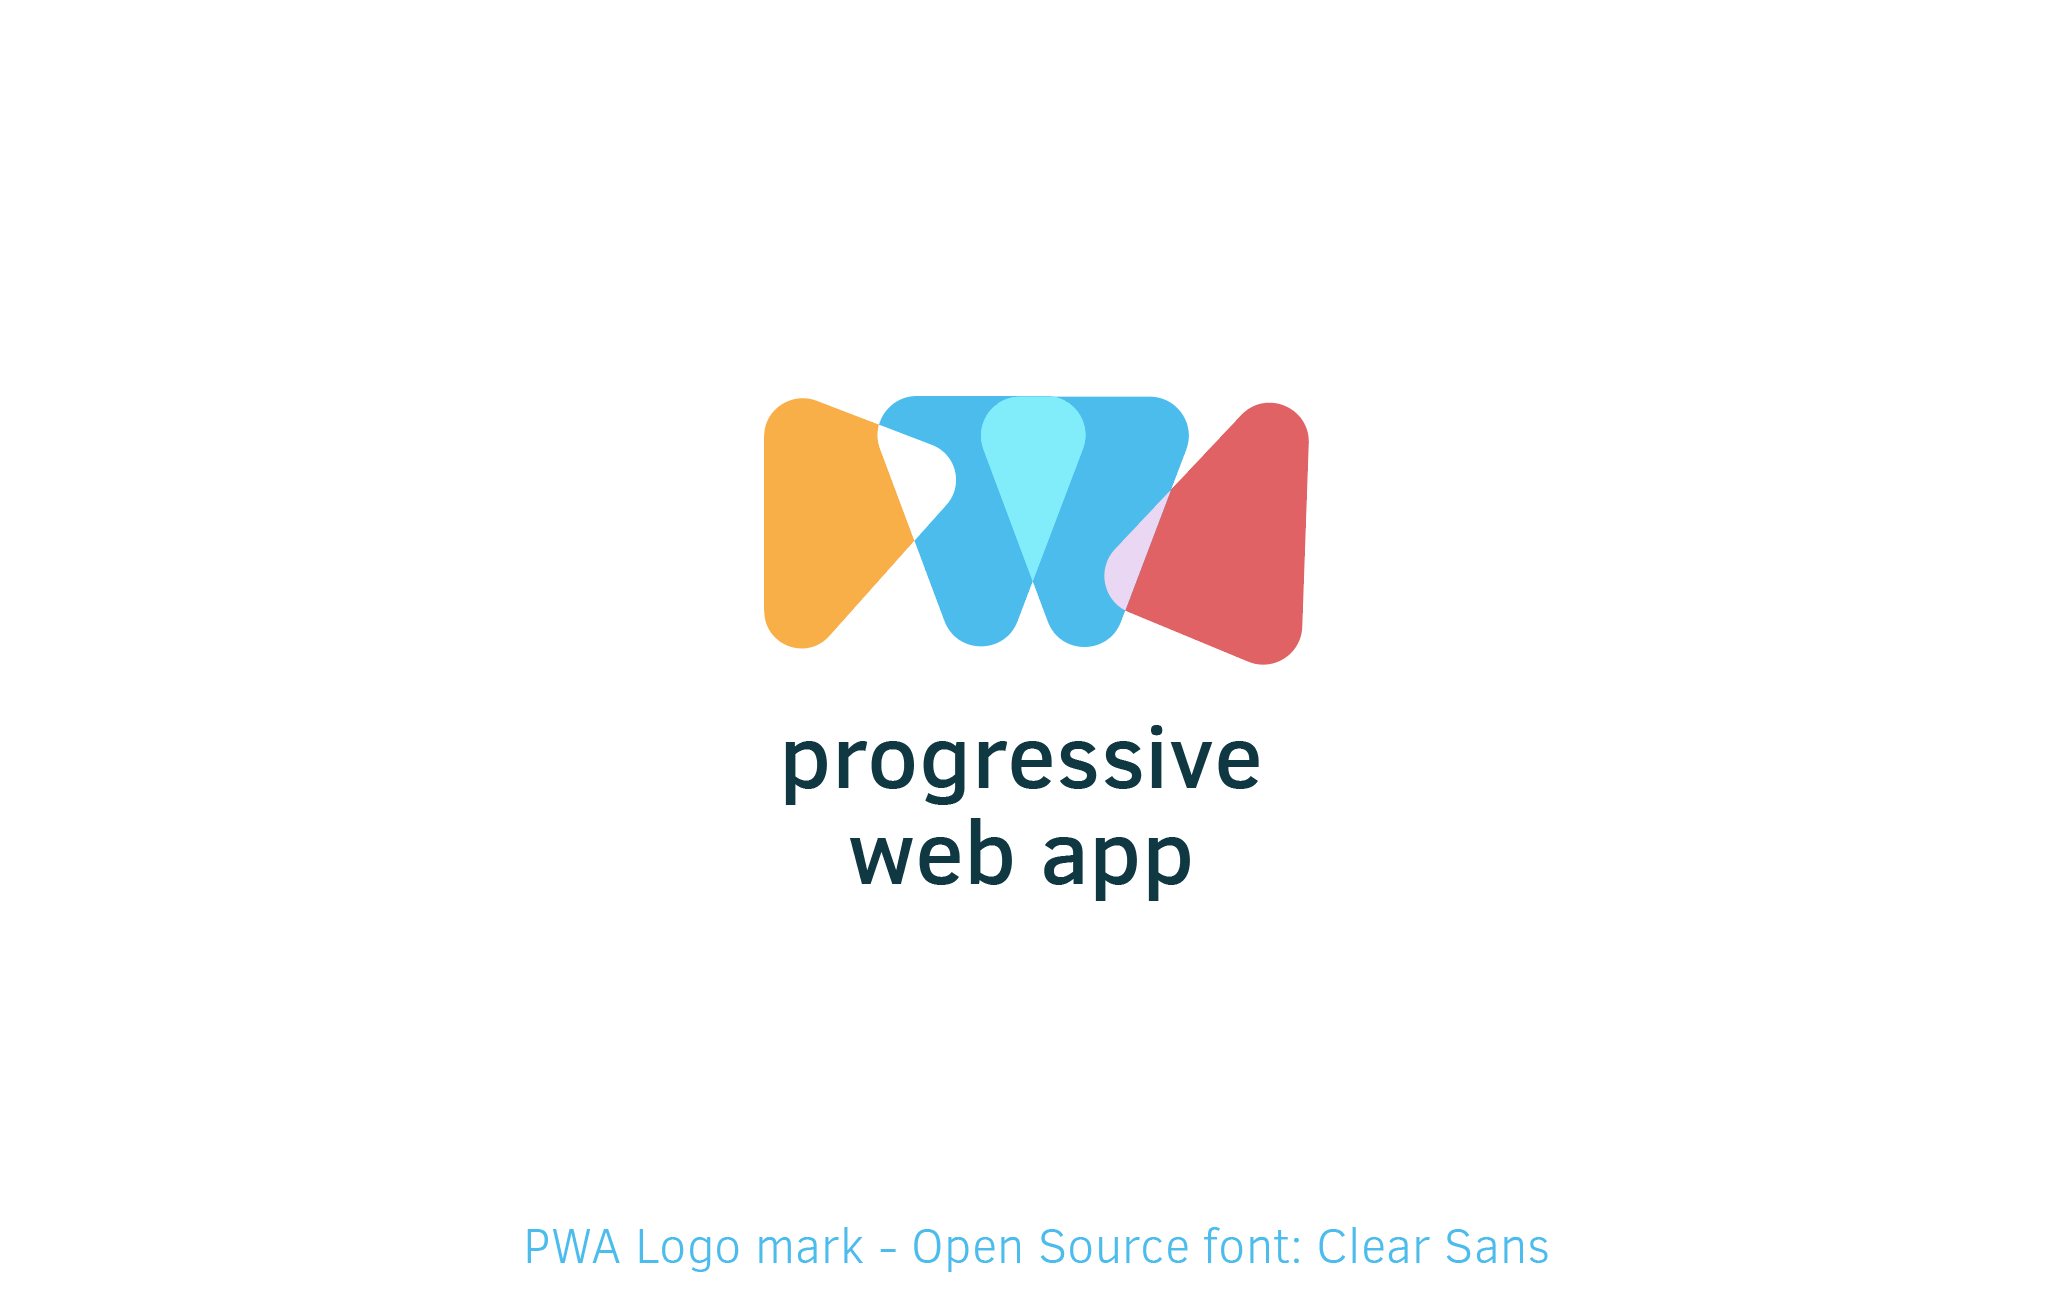 Azure Web App Logo - Voting for 